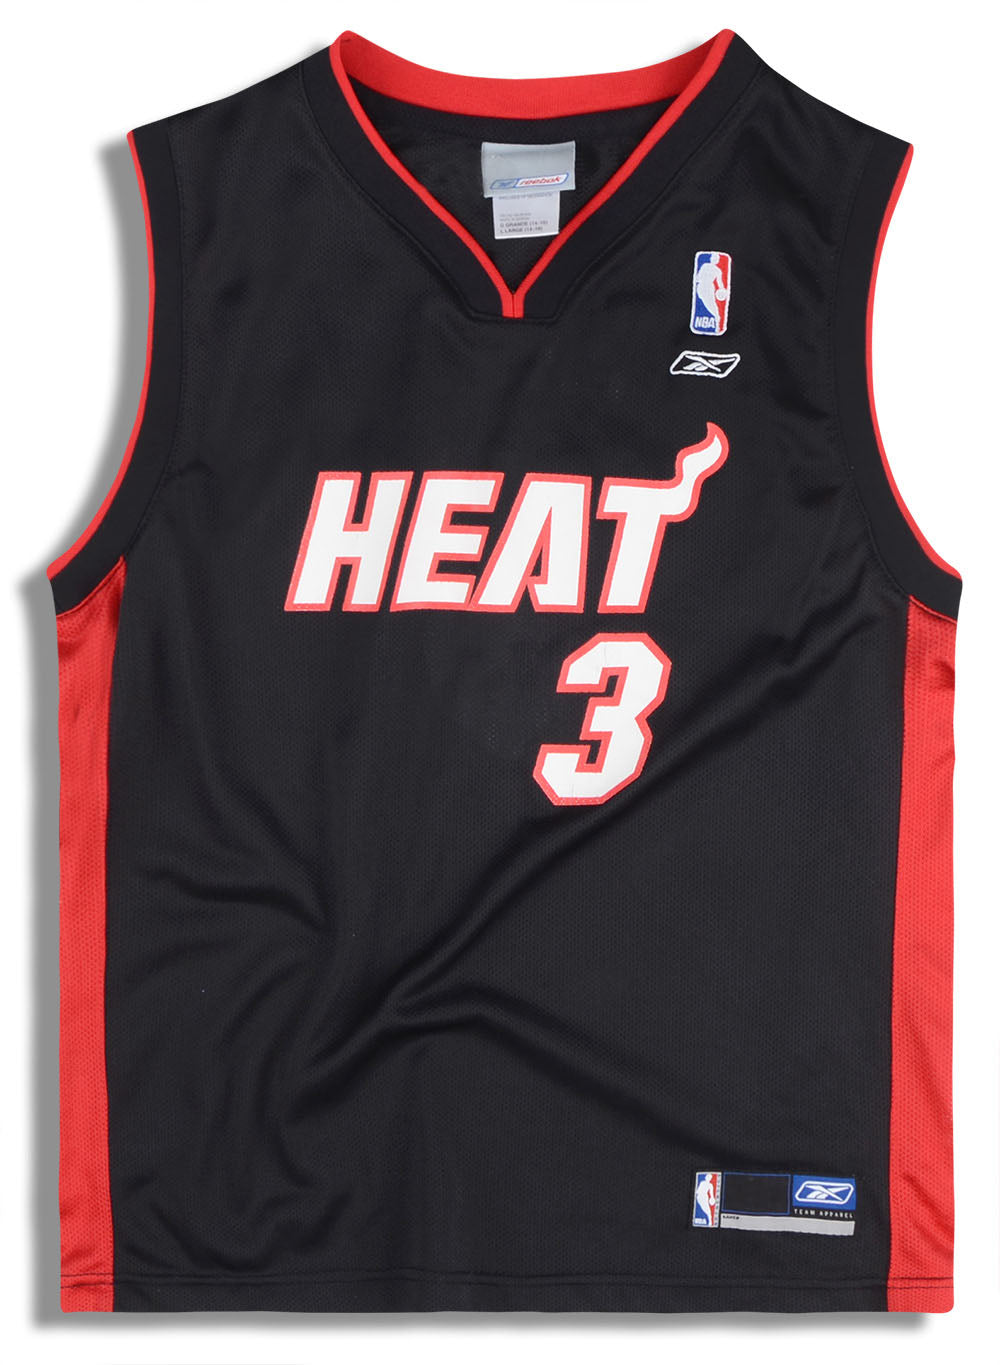 Reebok, Shirts, Reebok Hwc Miami Heat South Beach Dwayne Wade Alt Jersey  Size 3xl Mens